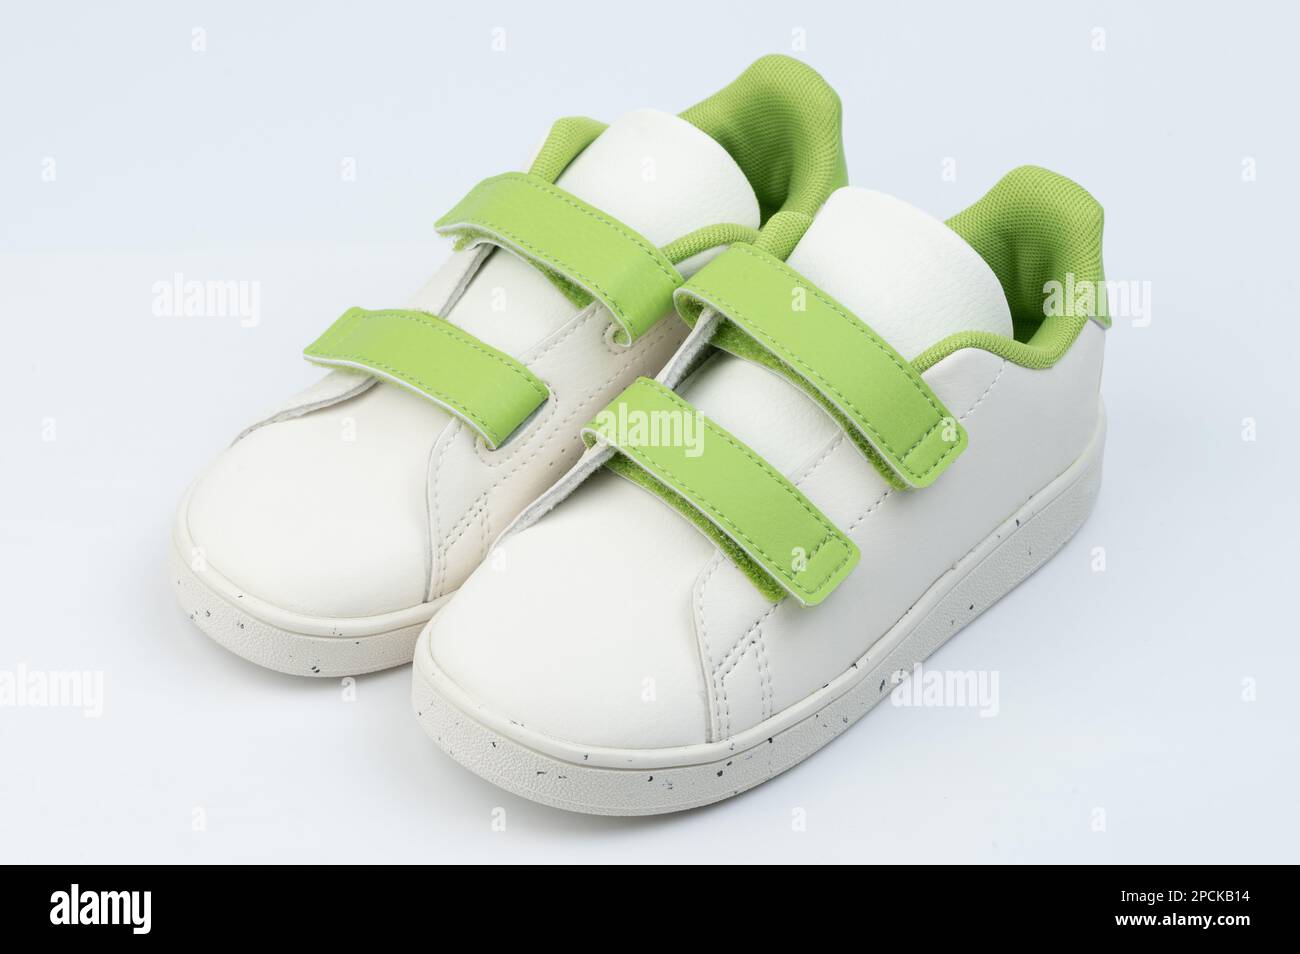 Blanc avec paire de chaussures velcro vertes isolées sur fond de studio Banque D'Images